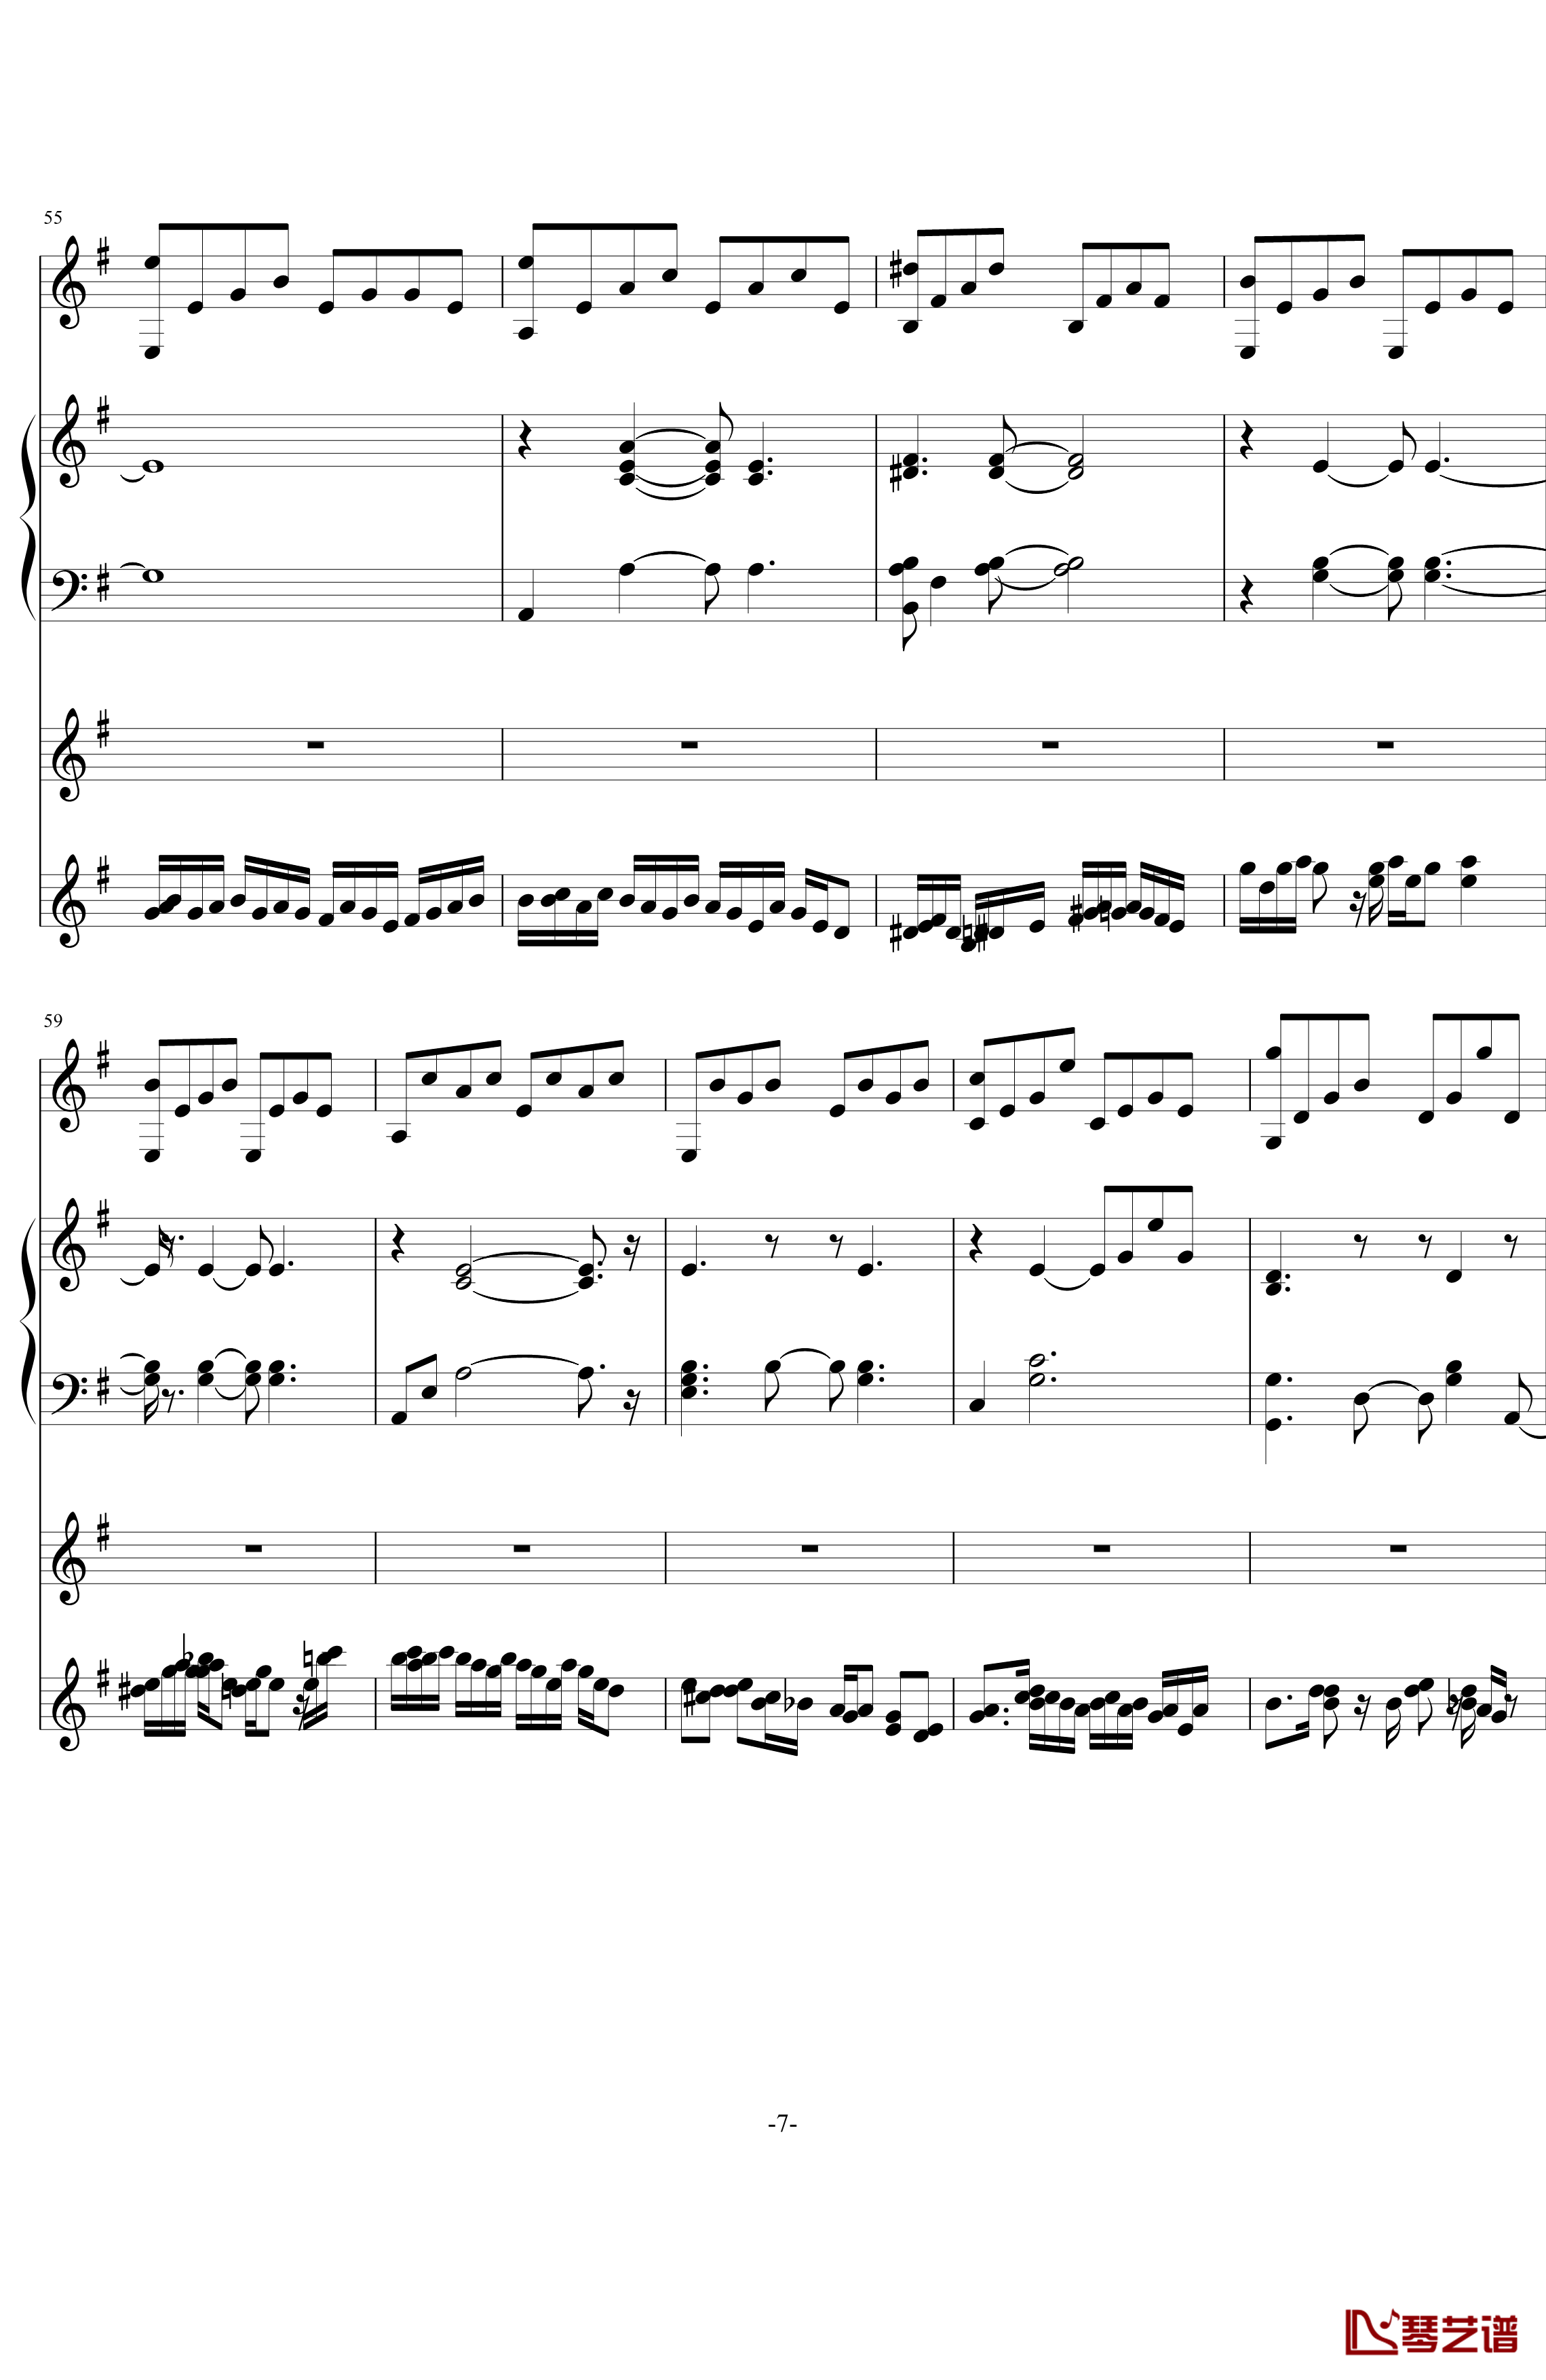 中提琴协奏版钢琴谱-含有钢琴独奏-老奠7